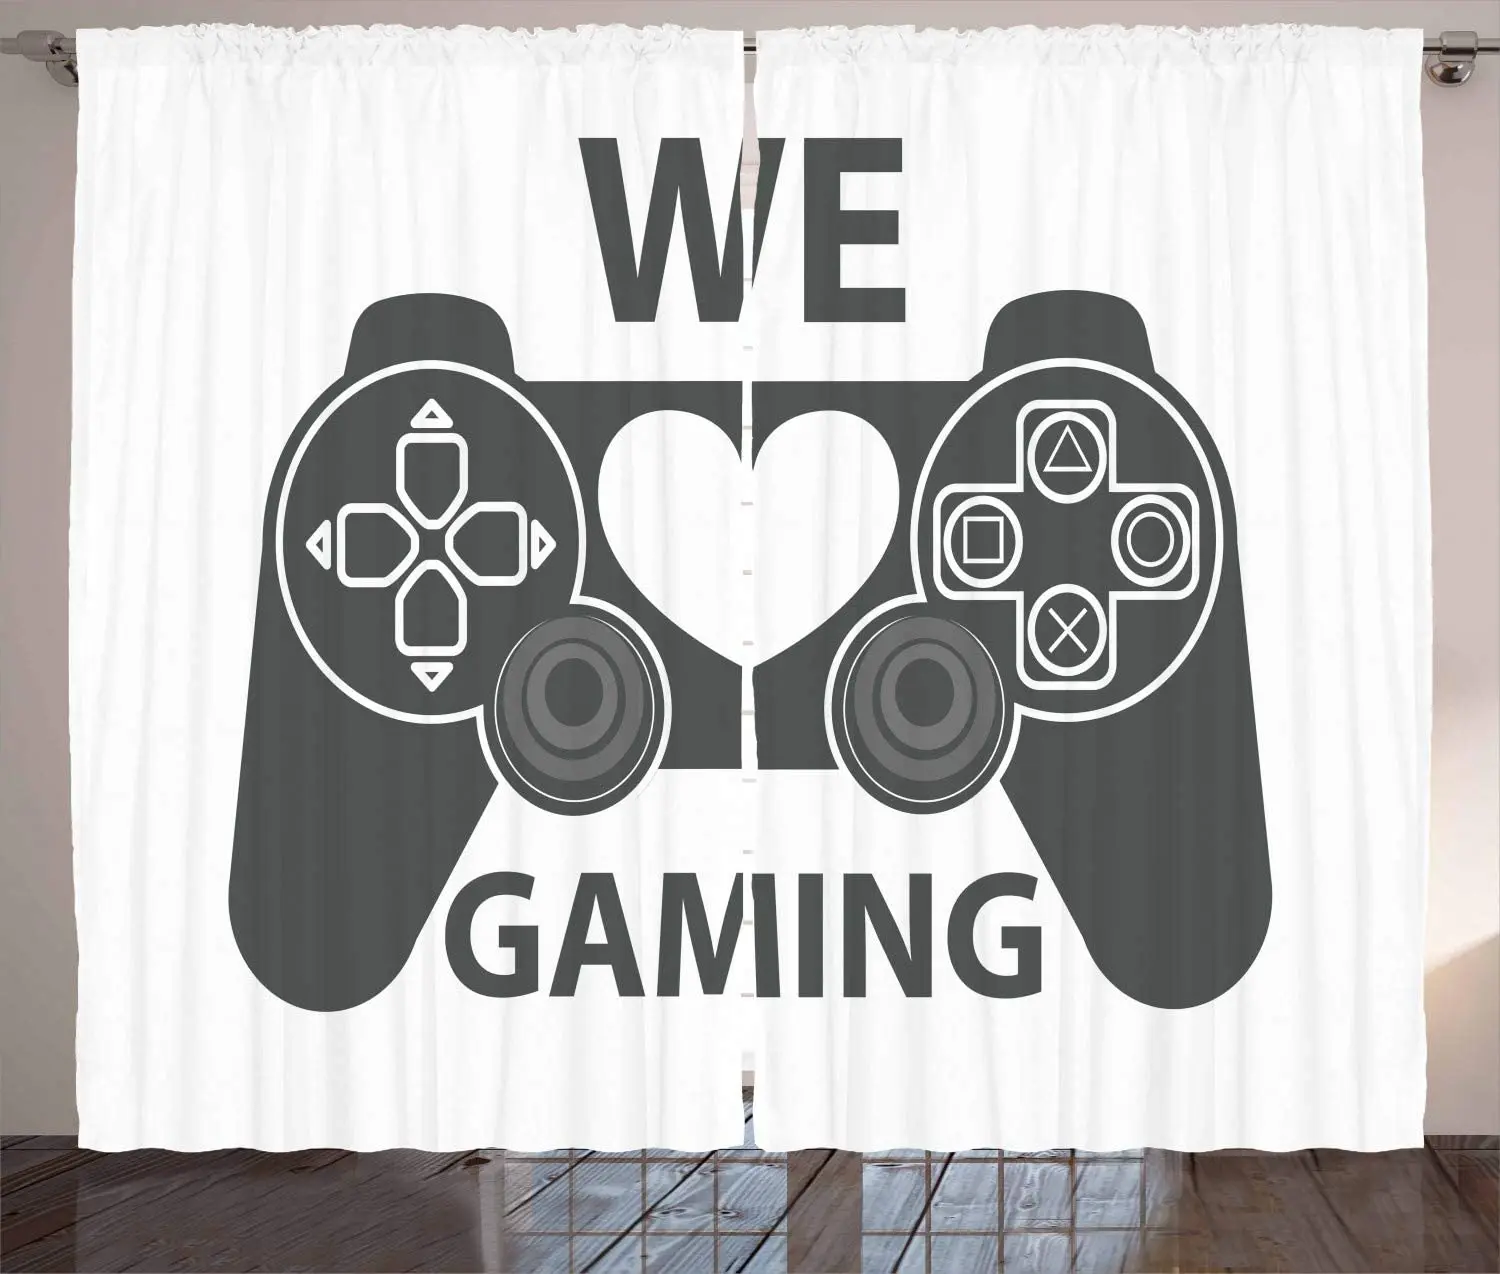 Gamer Cortinas Nos Encantan los Juegos de Palabras en escala de grises de Diseño del Controlador con el Corazón en El Medio de la Sala Ventana del Dormitorio Cortinas Blancas 2